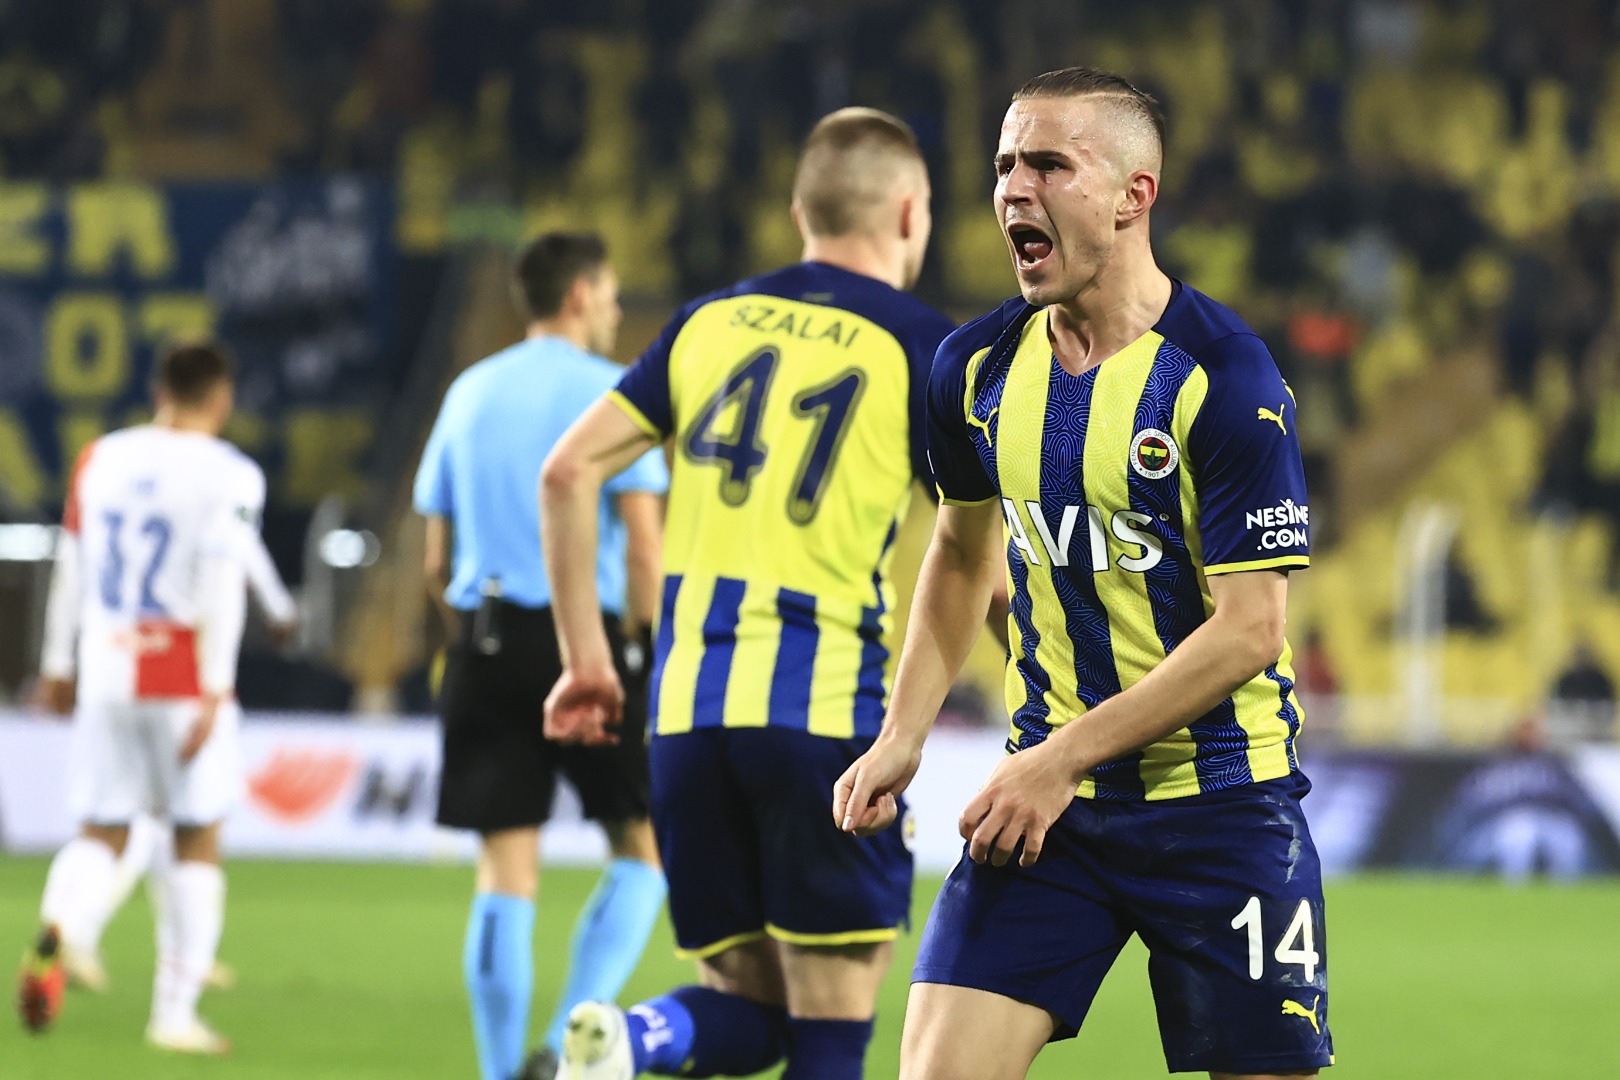 Fenerbahçe'nin yeni teknik direktörü kim olacak?